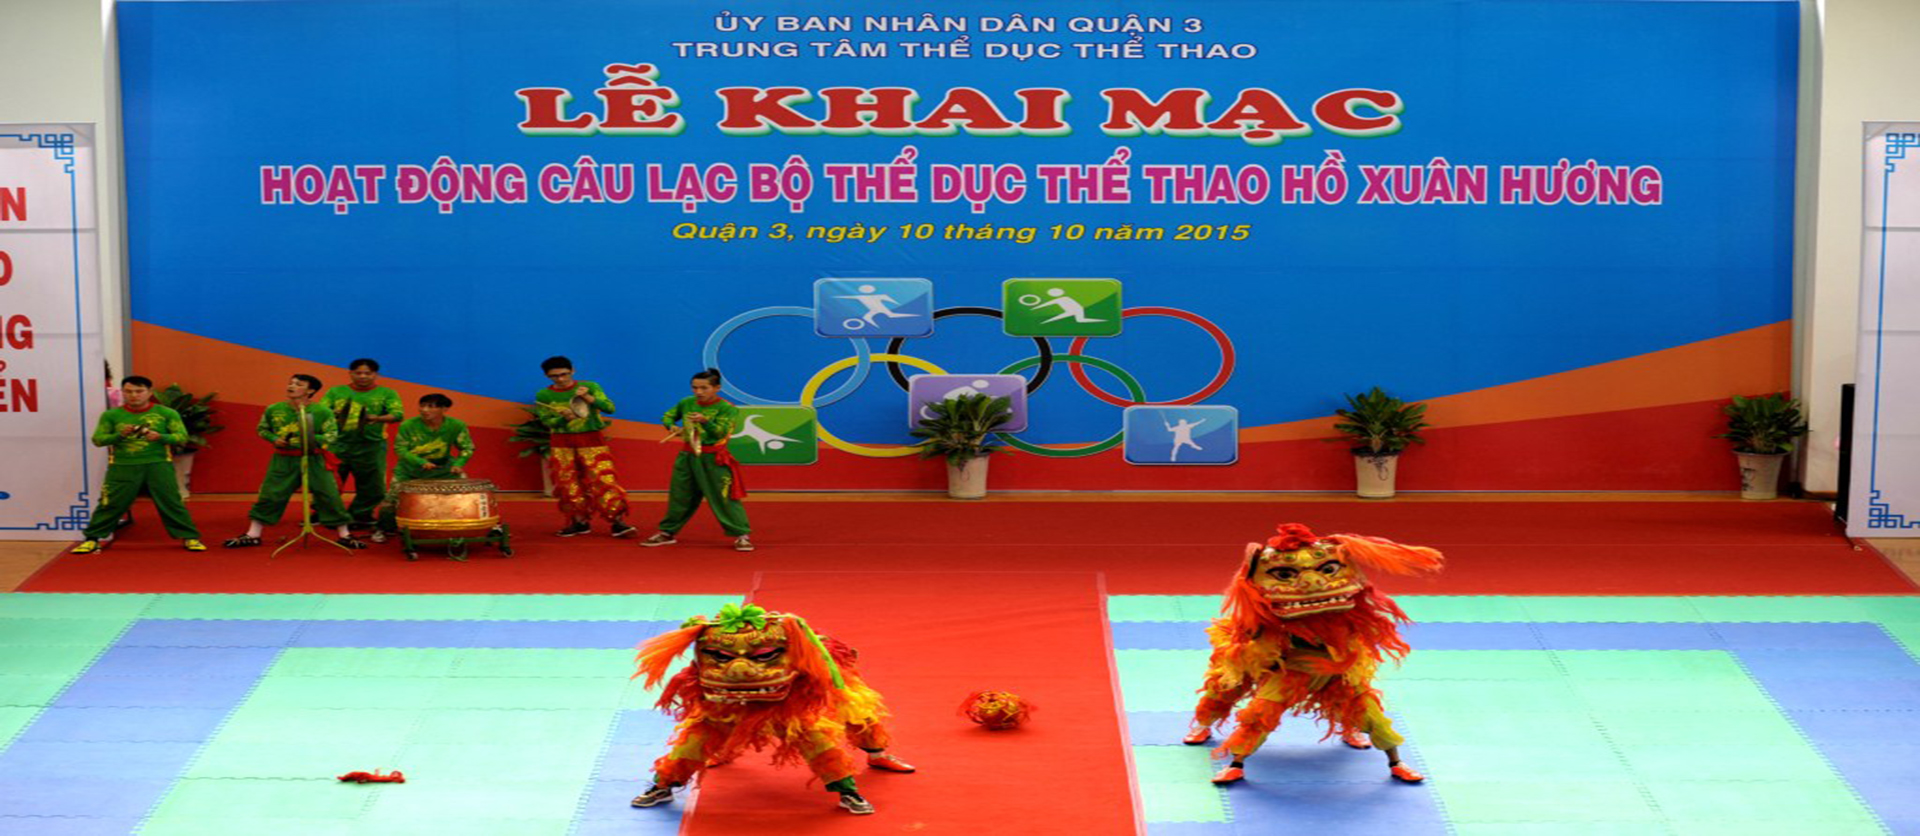 Câu lạc bộ thể dục thể thao Hồ Xuân Hương